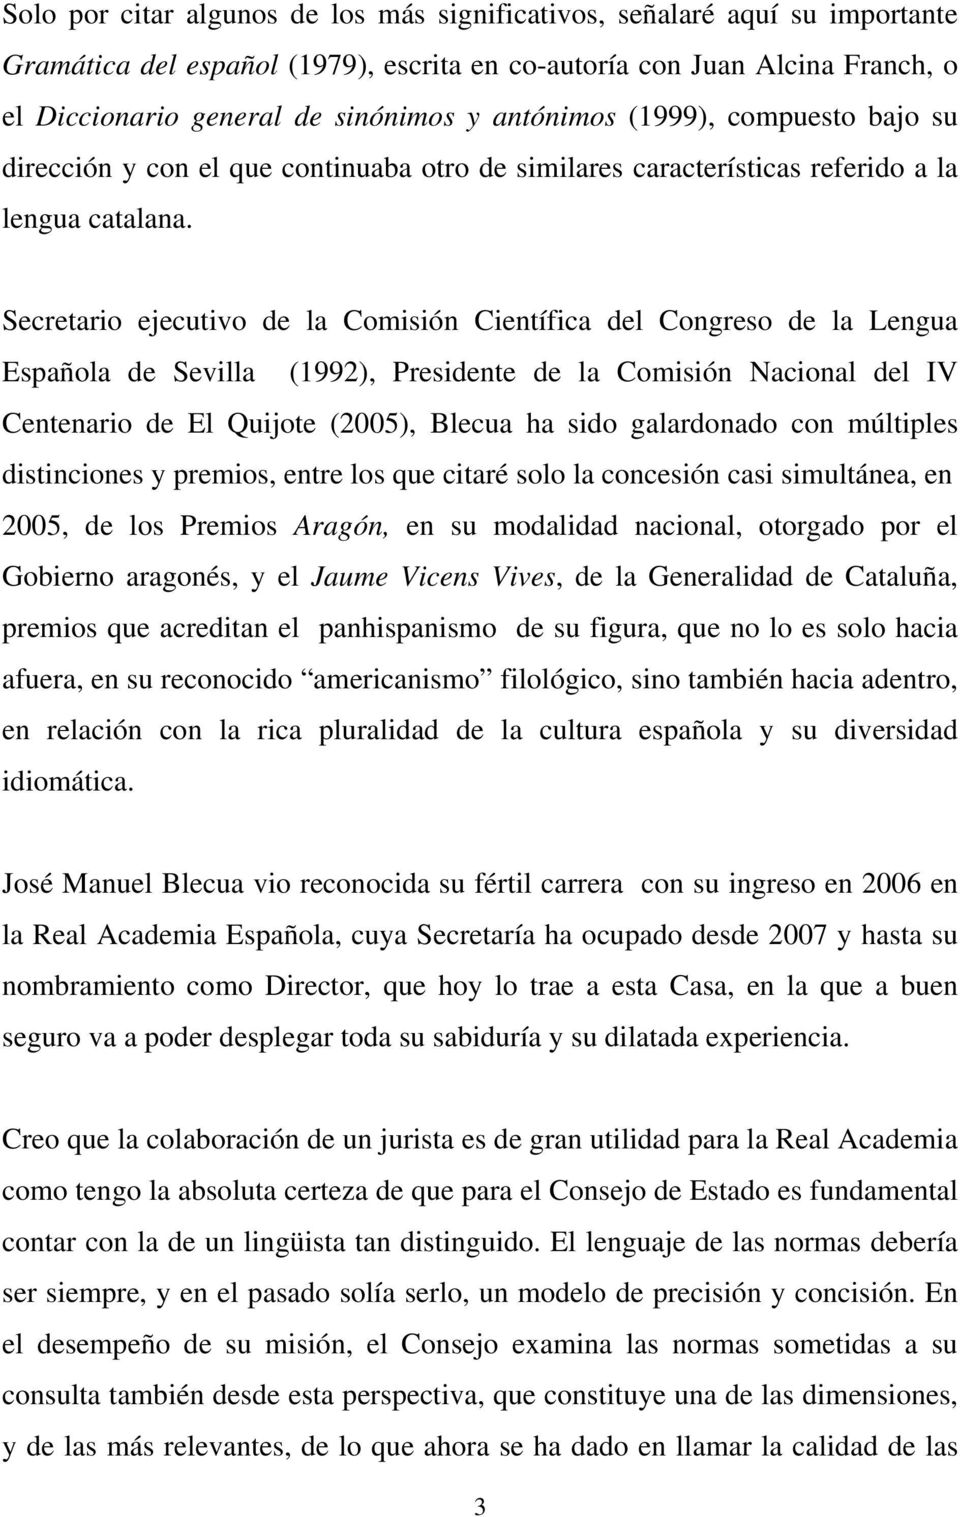 Secretario ejecutivo de la Comisión Científica del Congreso de la Lengua Española de Sevilla (1992), Presidente de la Comisión Nacional del IV Centenario de El Quijote (2005), Blecua ha sido